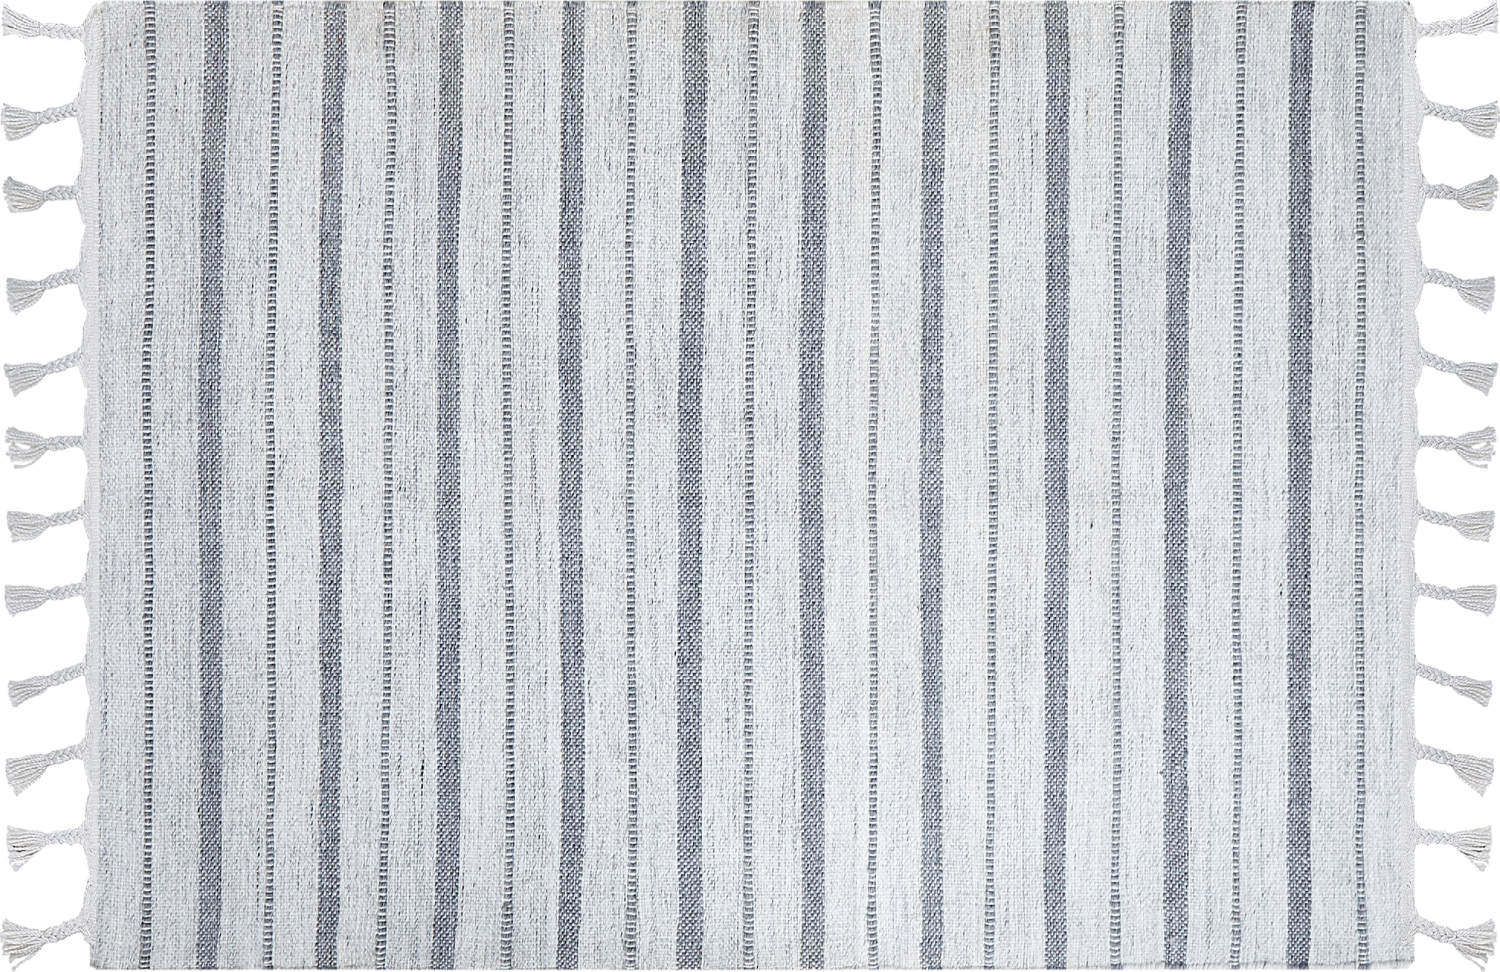 Outdoor Teppich cremeweiß grau 160 x 230 cm Streifenmuster Kurzflor BADEMLI Bild 1